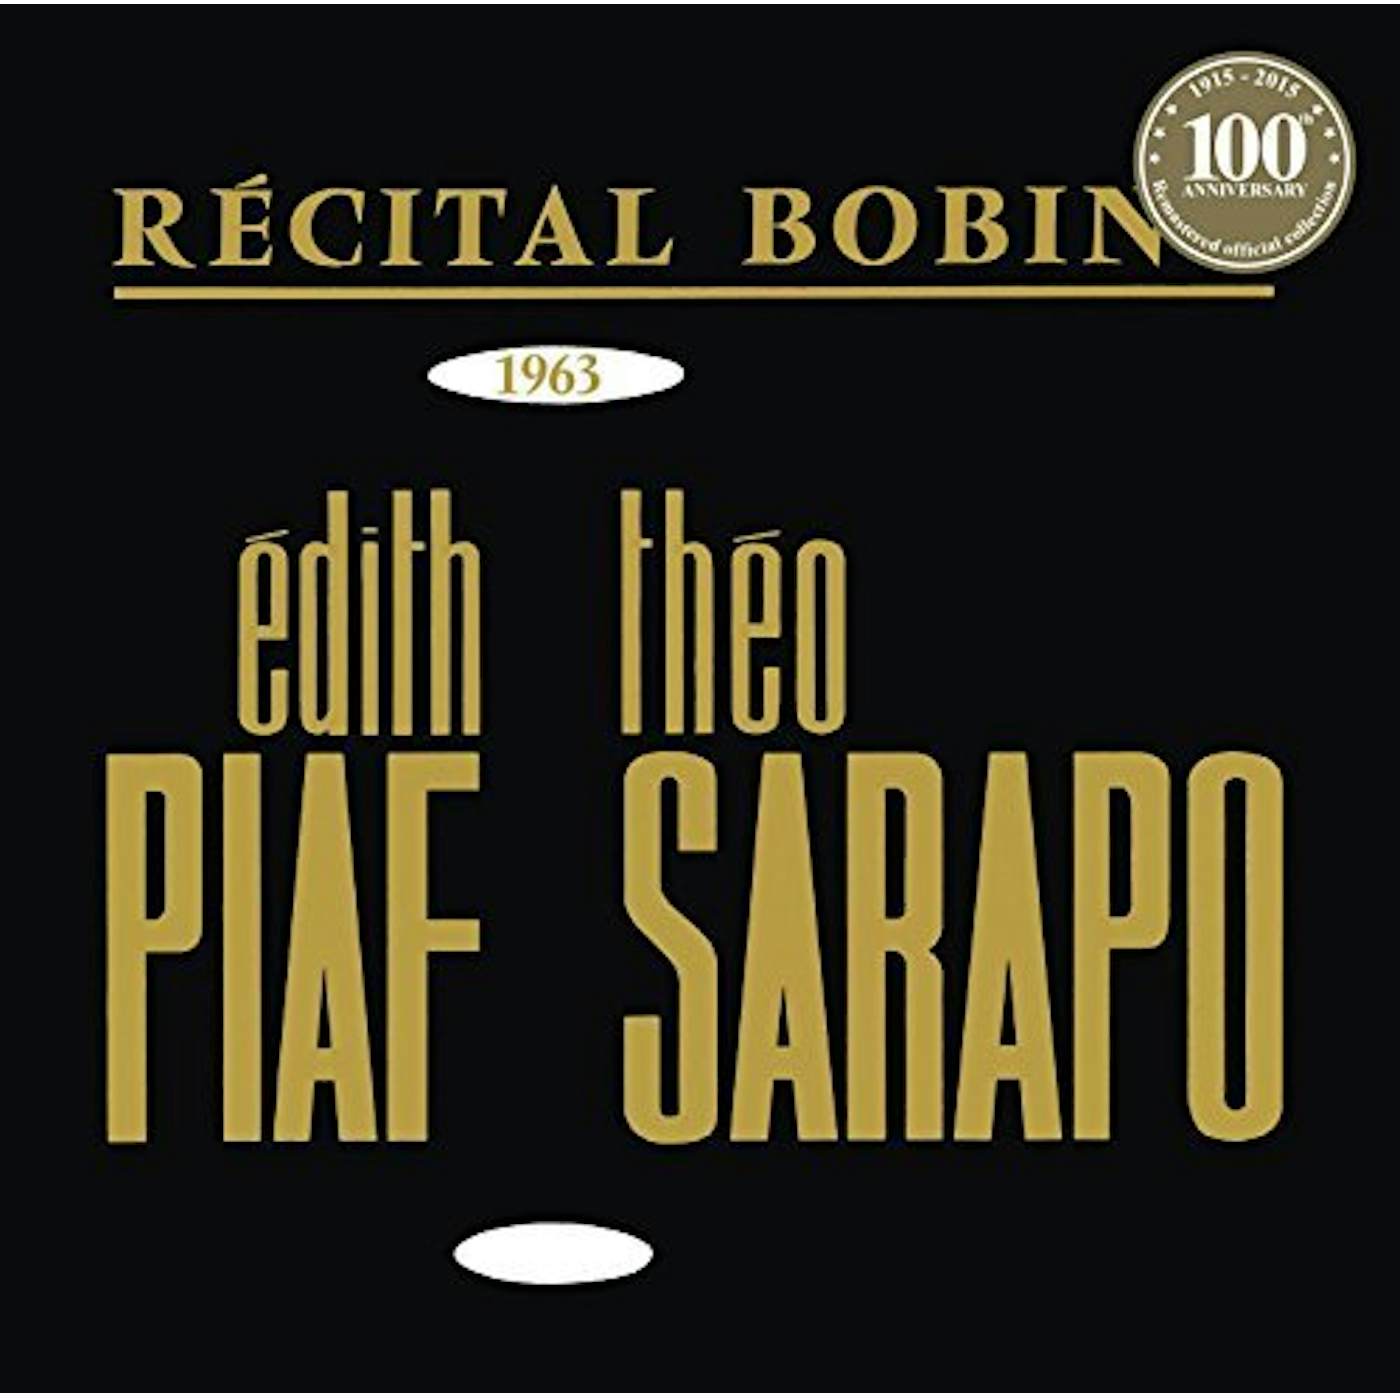 Édith Piaf BOBINO 1963 PIAF ET SARAPO Vinyl Record